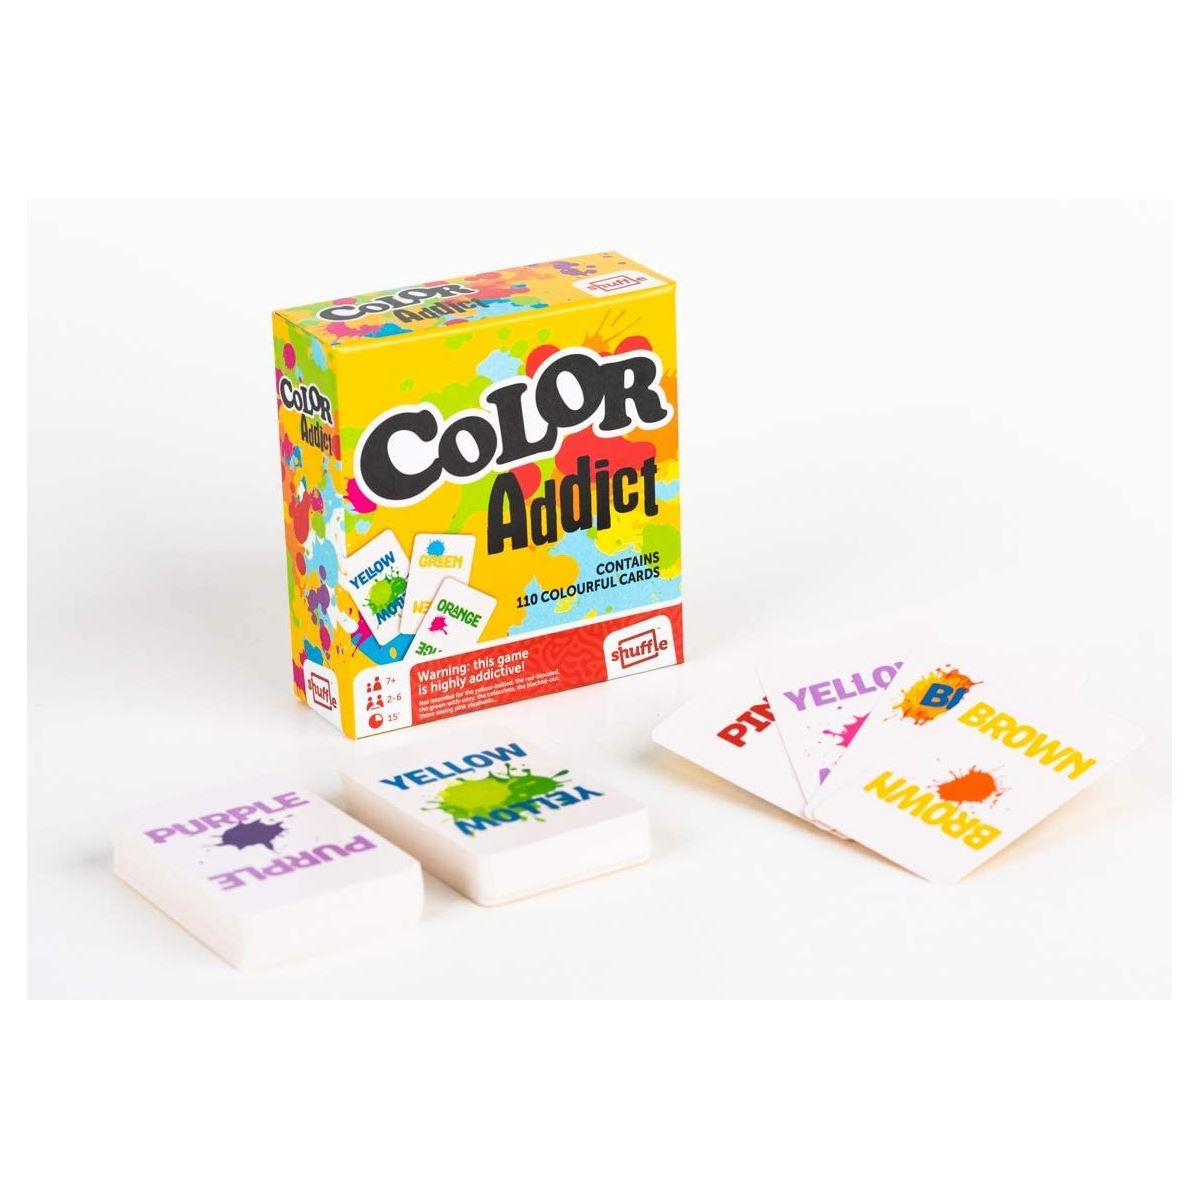 Colour Addict Game Box